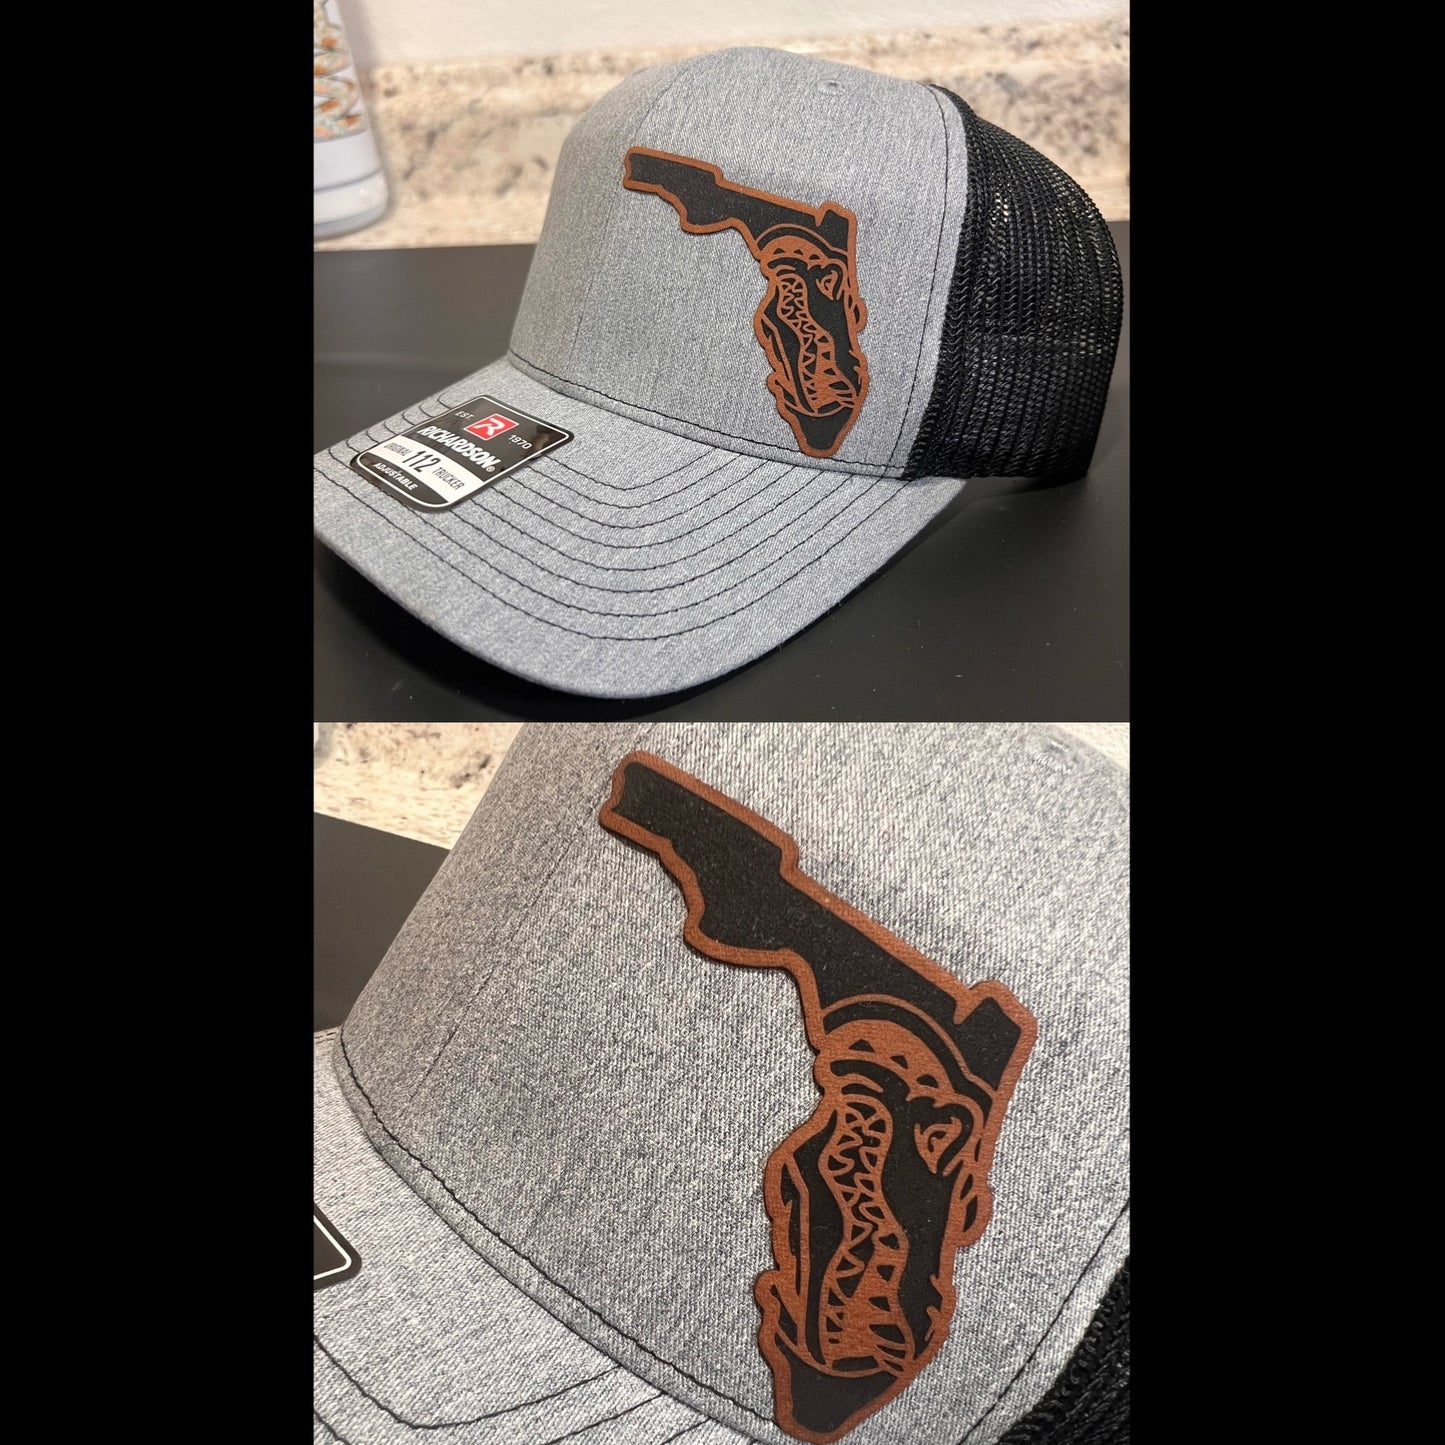 Gator/Florida Hat